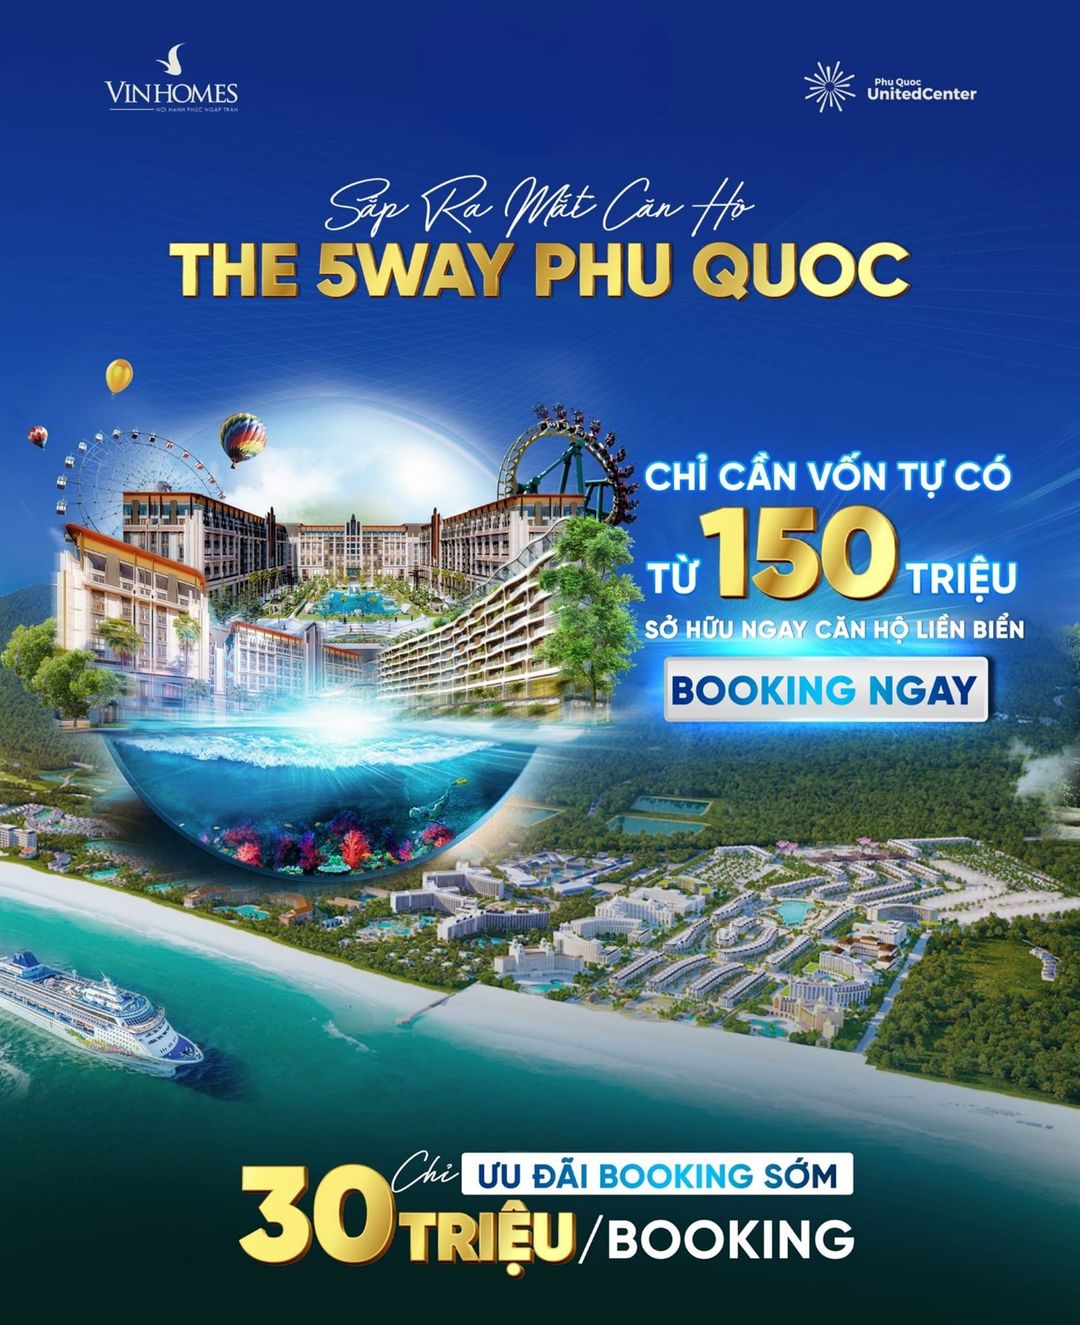 The 5Way Phú Quốc có giá bán ưu đãi, chính sách bán hàng hấp dẫn